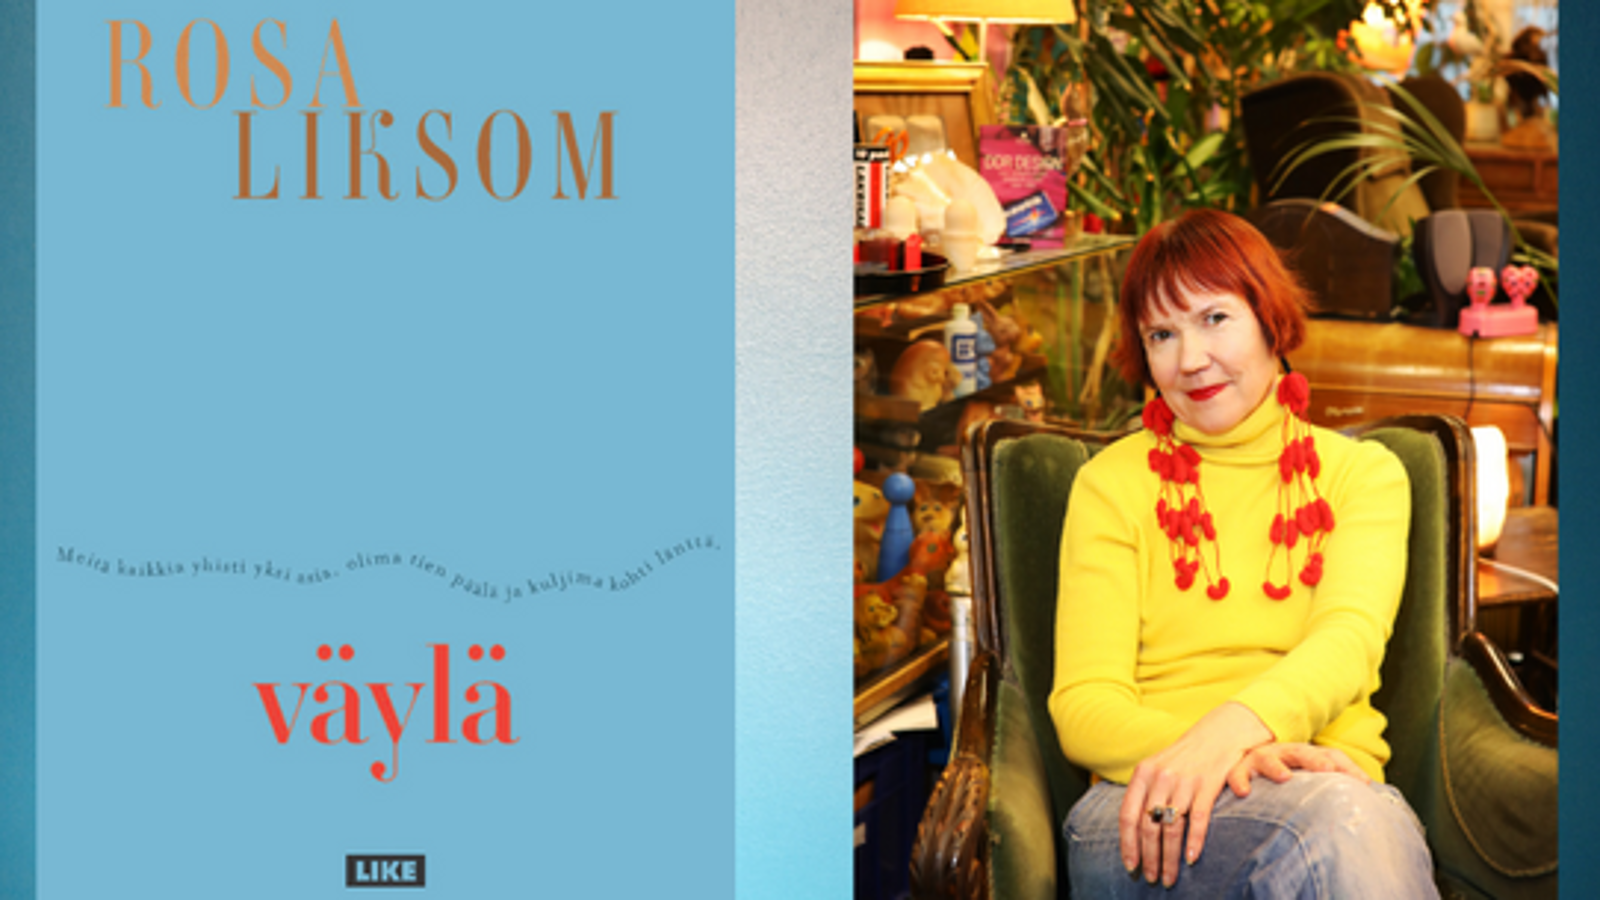 Kuvassa on vasemmalla kirjan kansi ja oikealla Rosa Liksom istumassa nojatuolissa ja päällään värikkäät vaatteet.